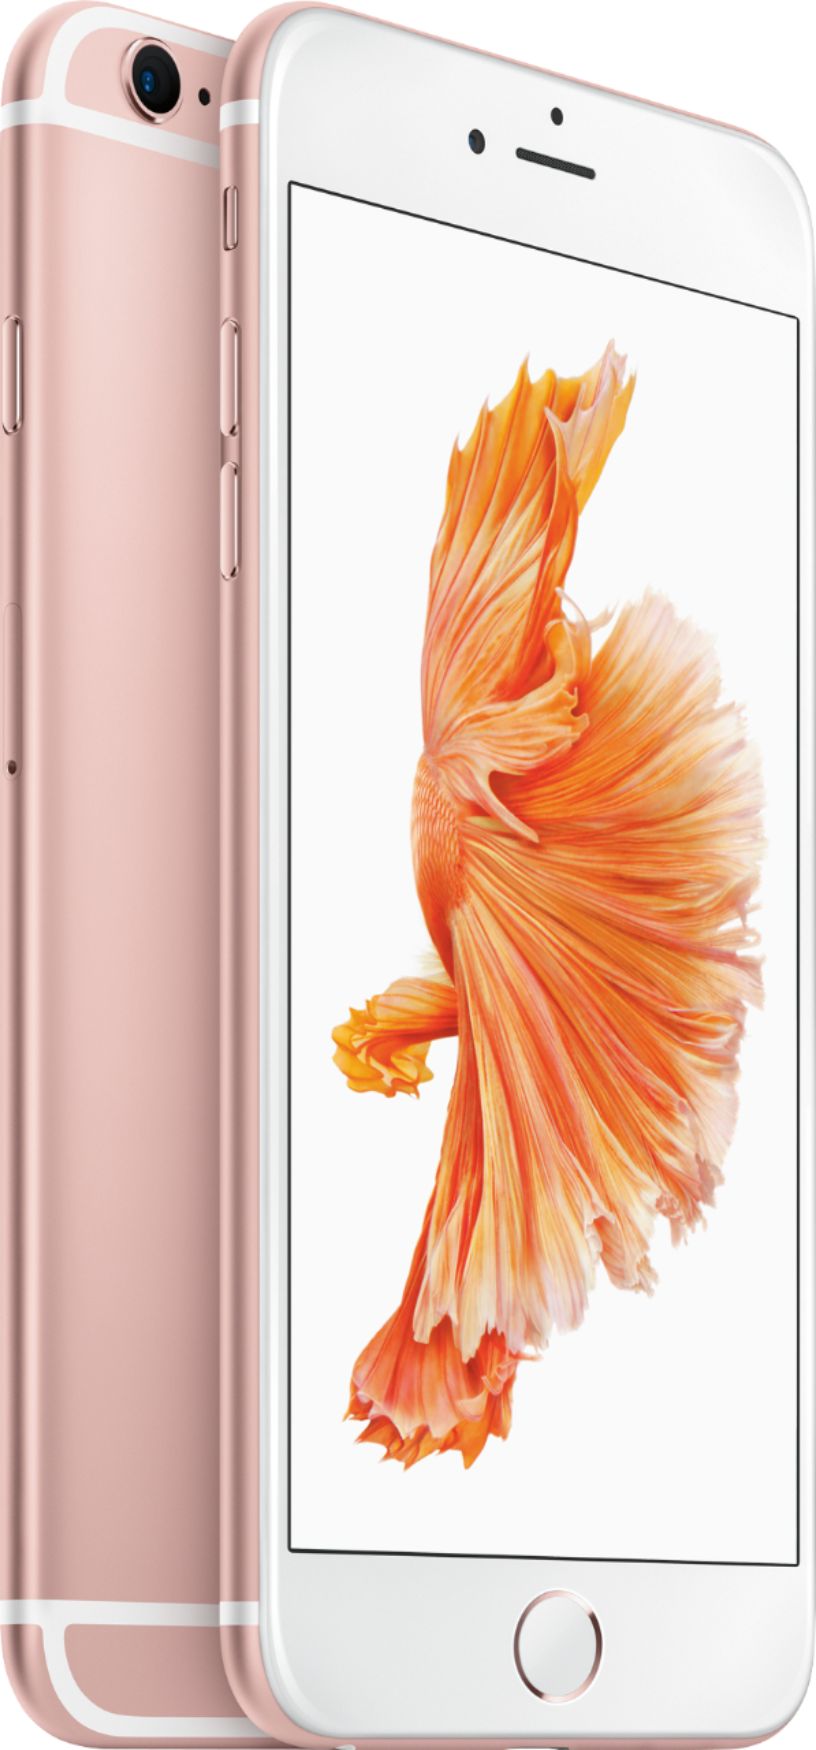 iPhone 6s Rose Gold 128 GB SIMフリー スマートフォン本体 